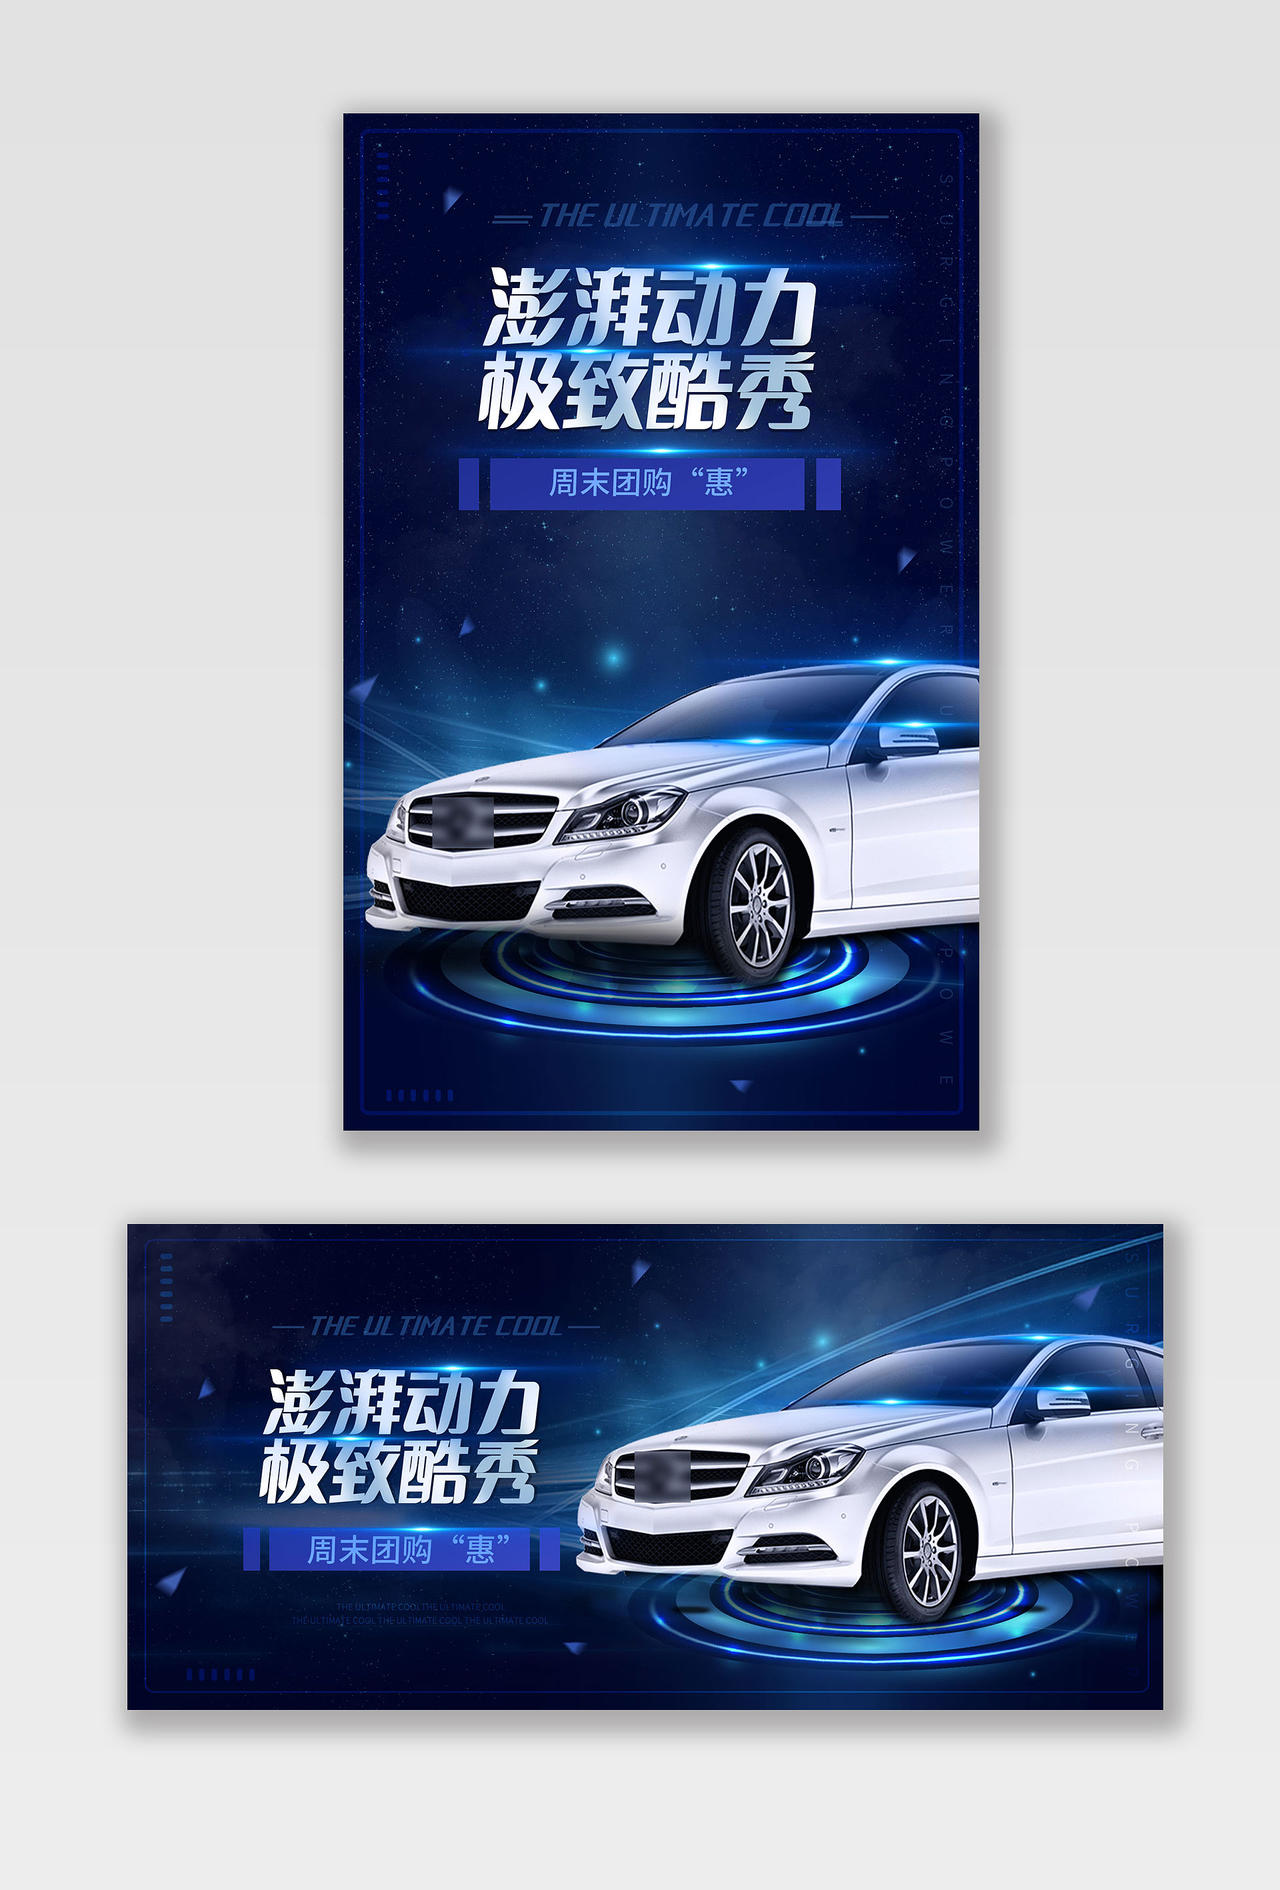 蓝色炫酷澎湃动力极致酷秀天猫汽车生活节海报banner